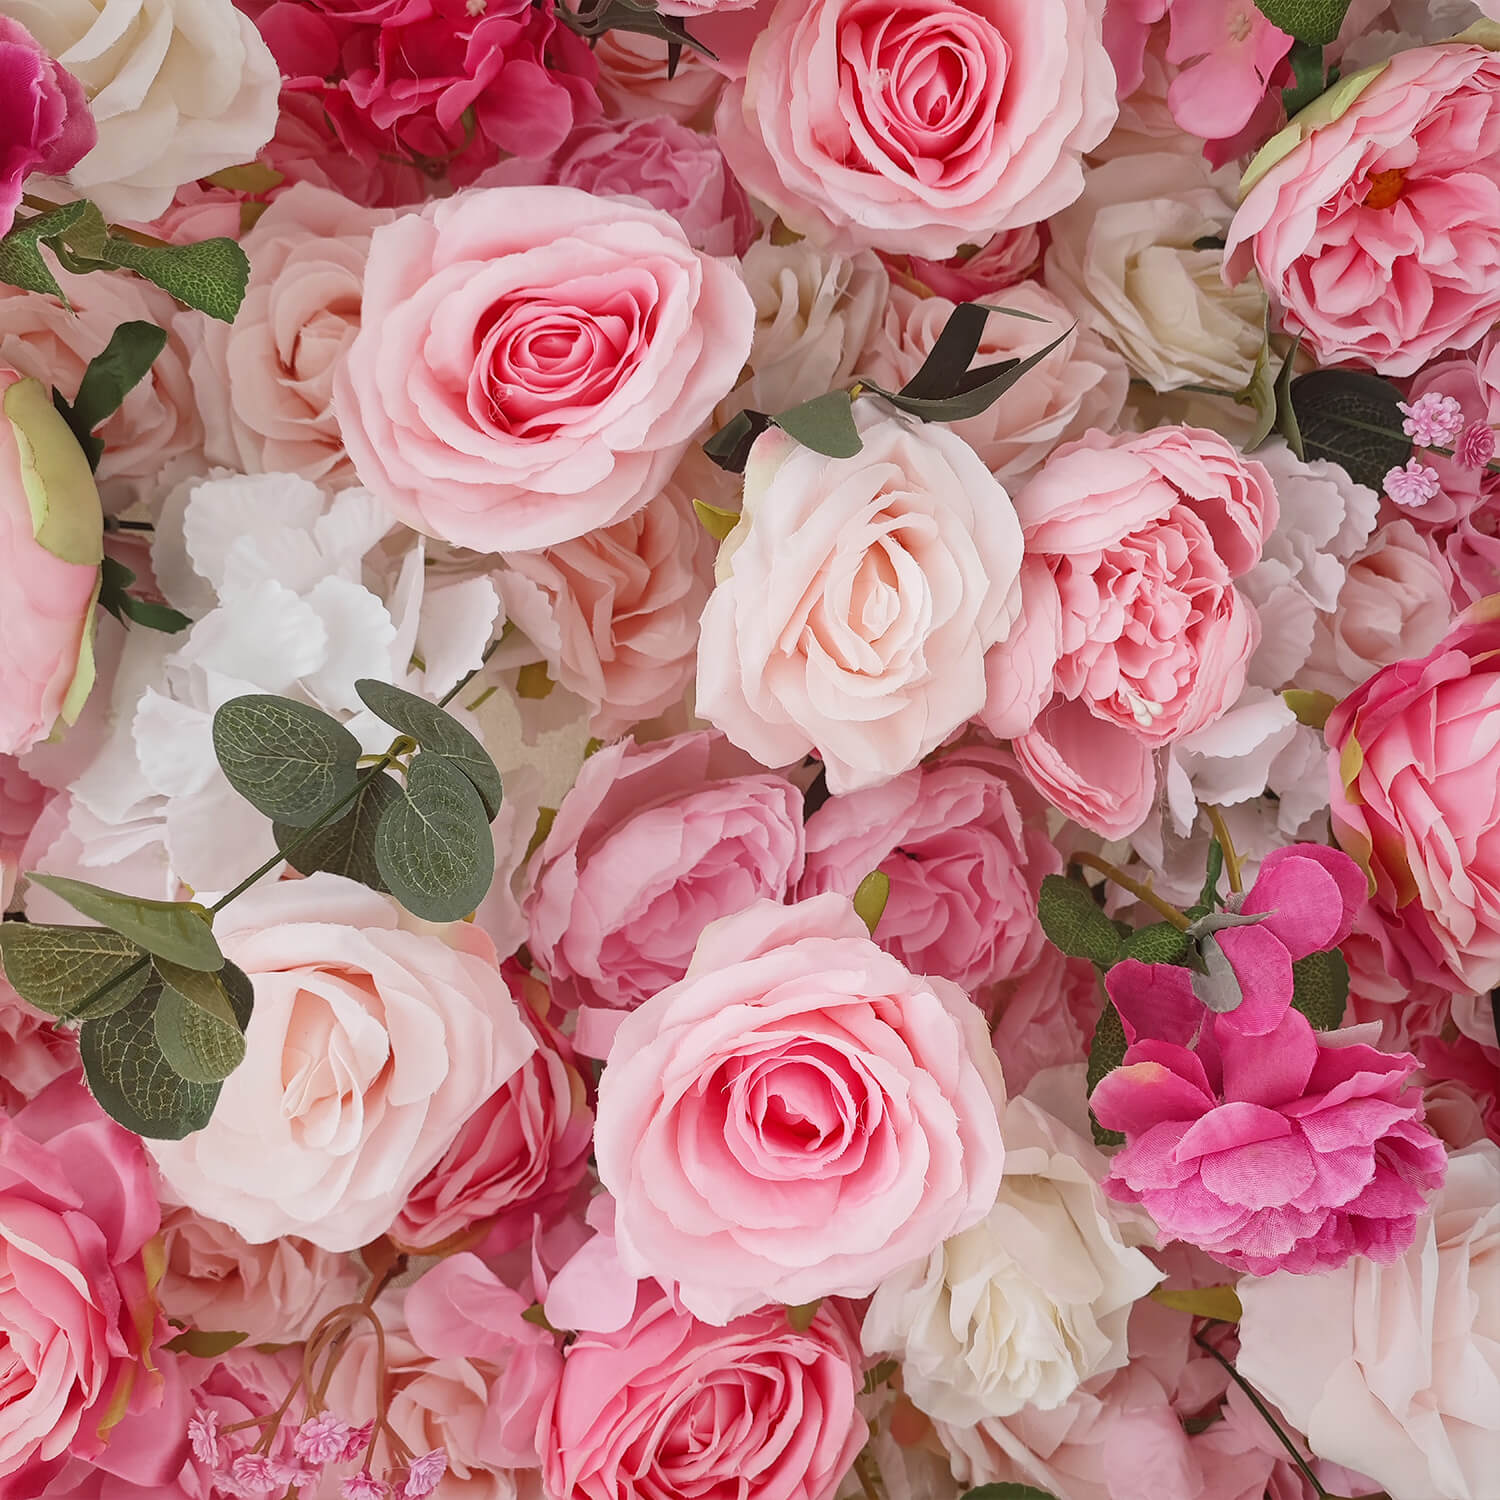 Flowerva – décoration murale florale de mariage, fleurs romantiques roses